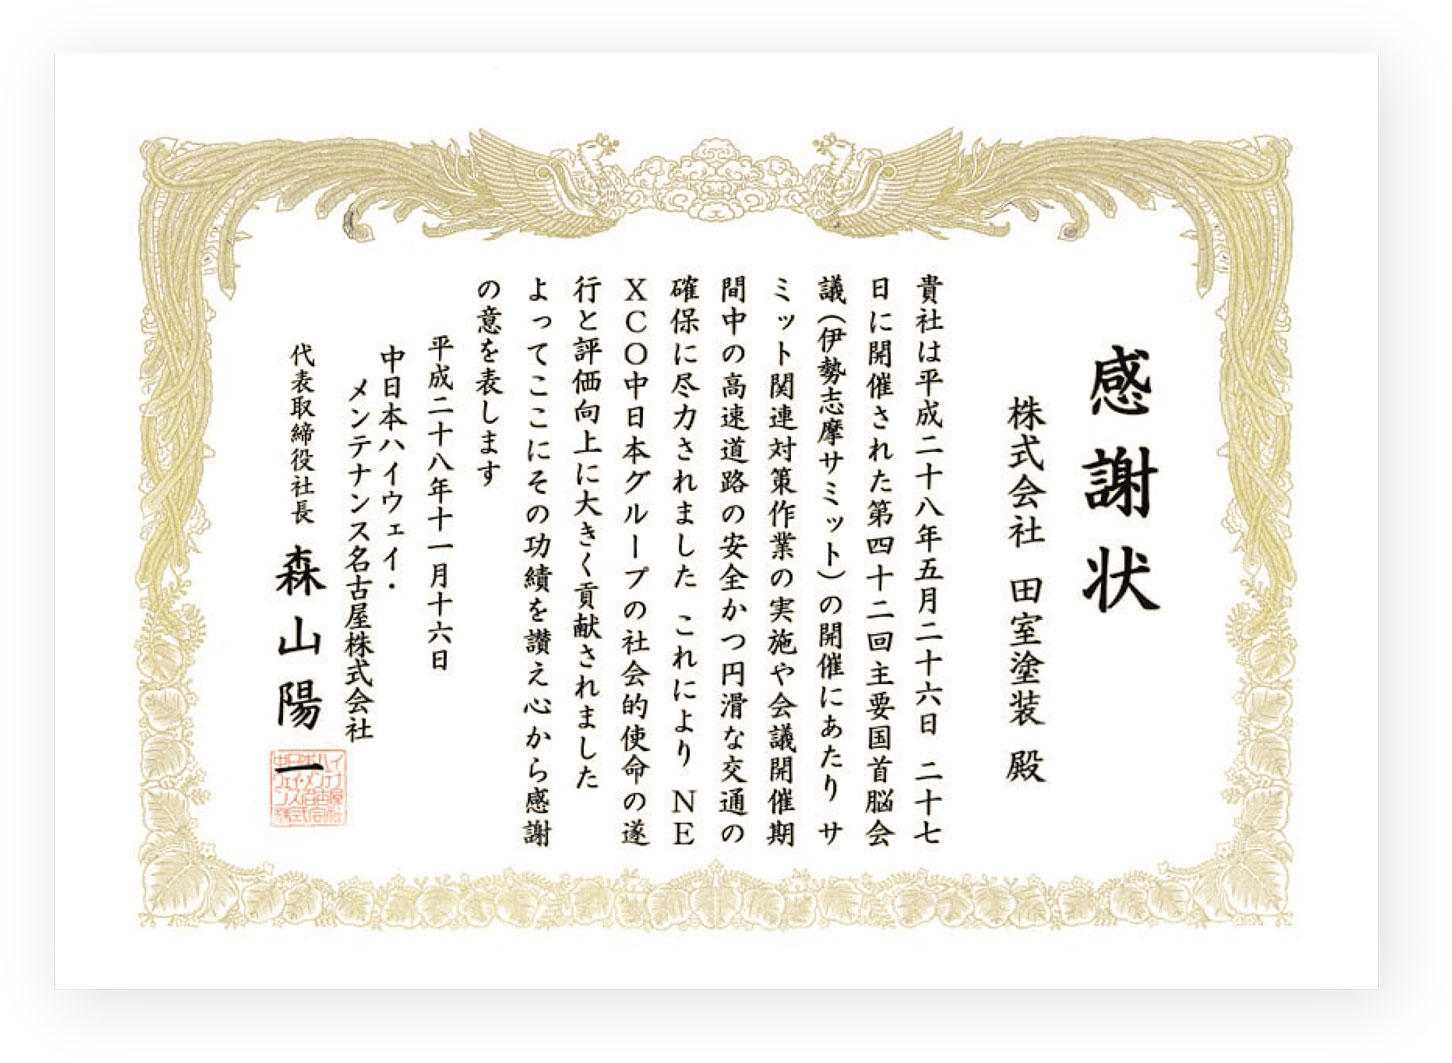 平成28年。中日本ハイウェイメンテナンス名古屋株式会社様より、伊勢志摩サミットの感謝状をいただきました。